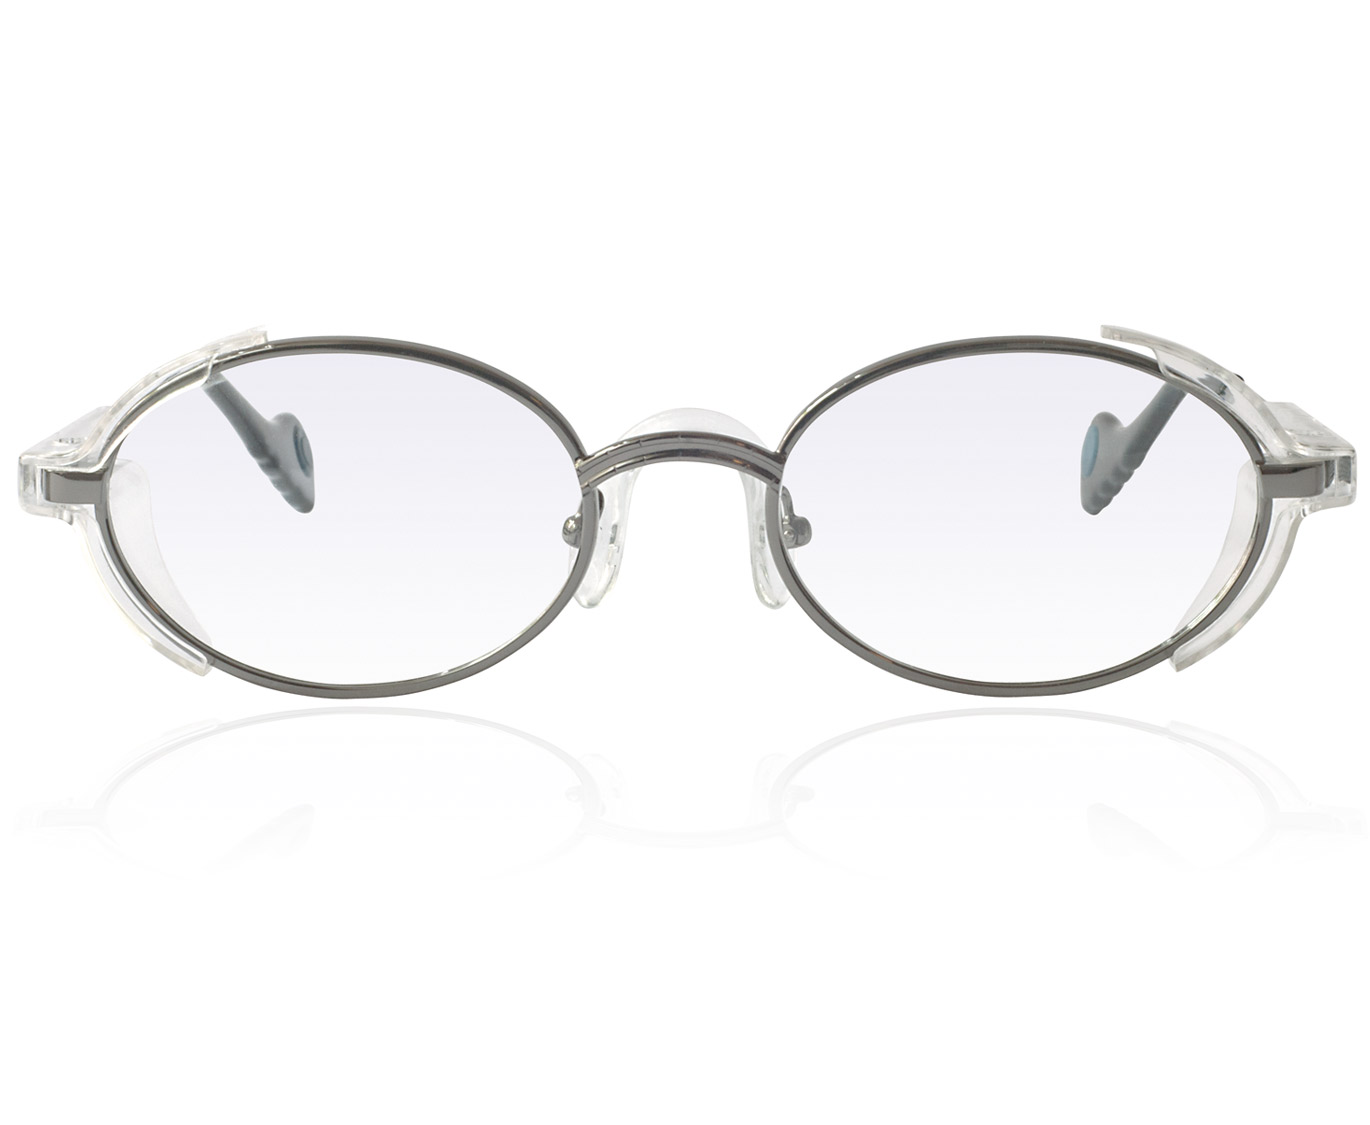 Korrektionsschutzbrille Modell A201